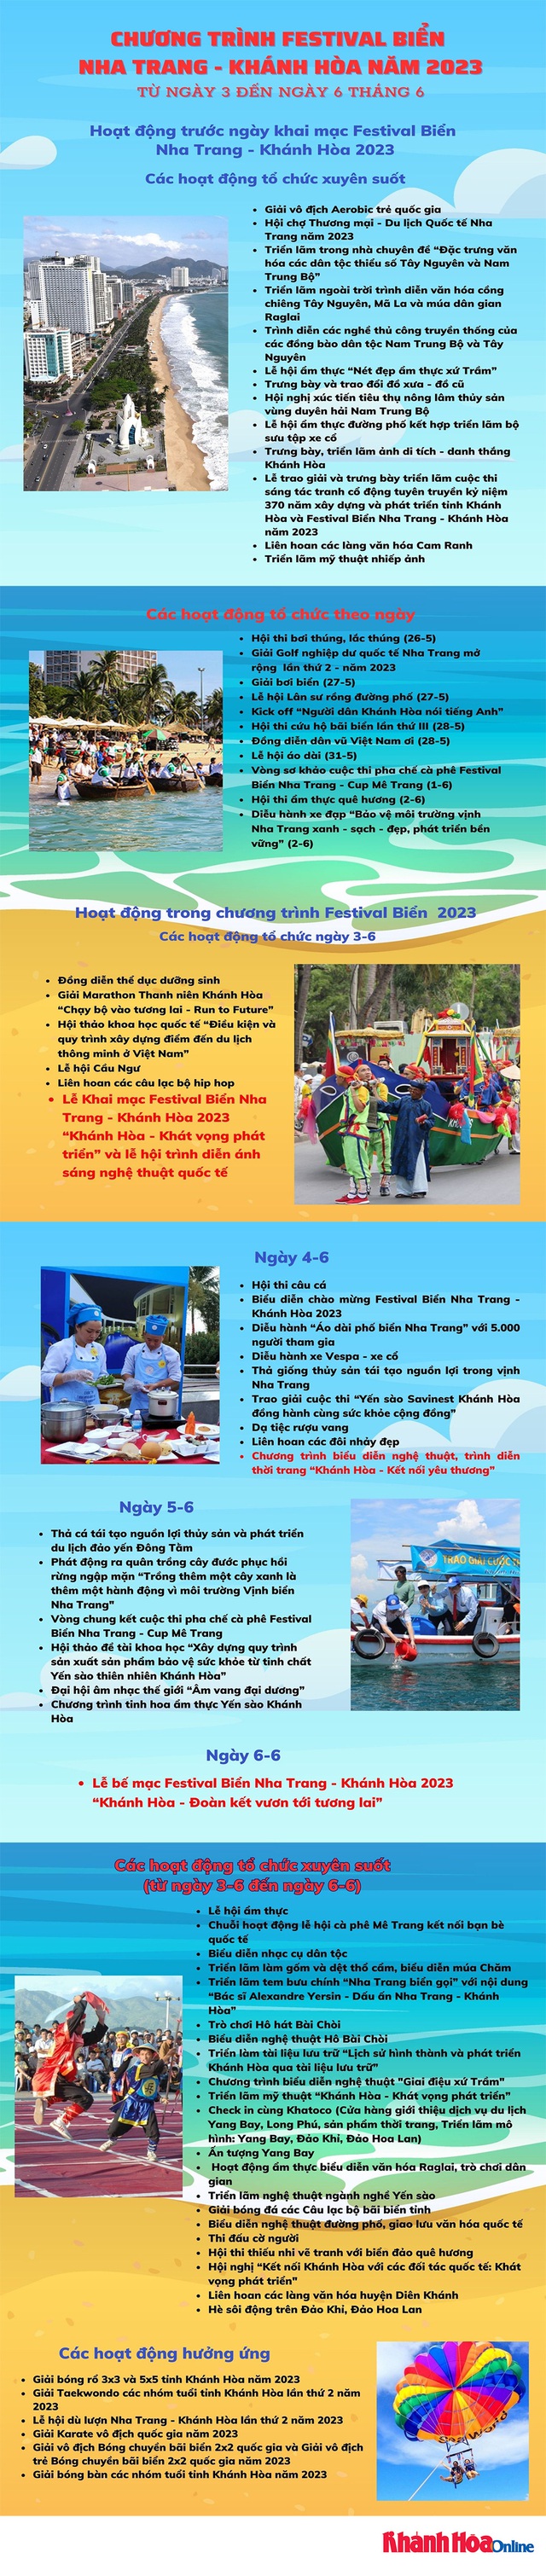 Festival biển Nha Trang 2023: Sẽ có màn trình diễn ánh sáng hết sức độc đáo - Ảnh 7.